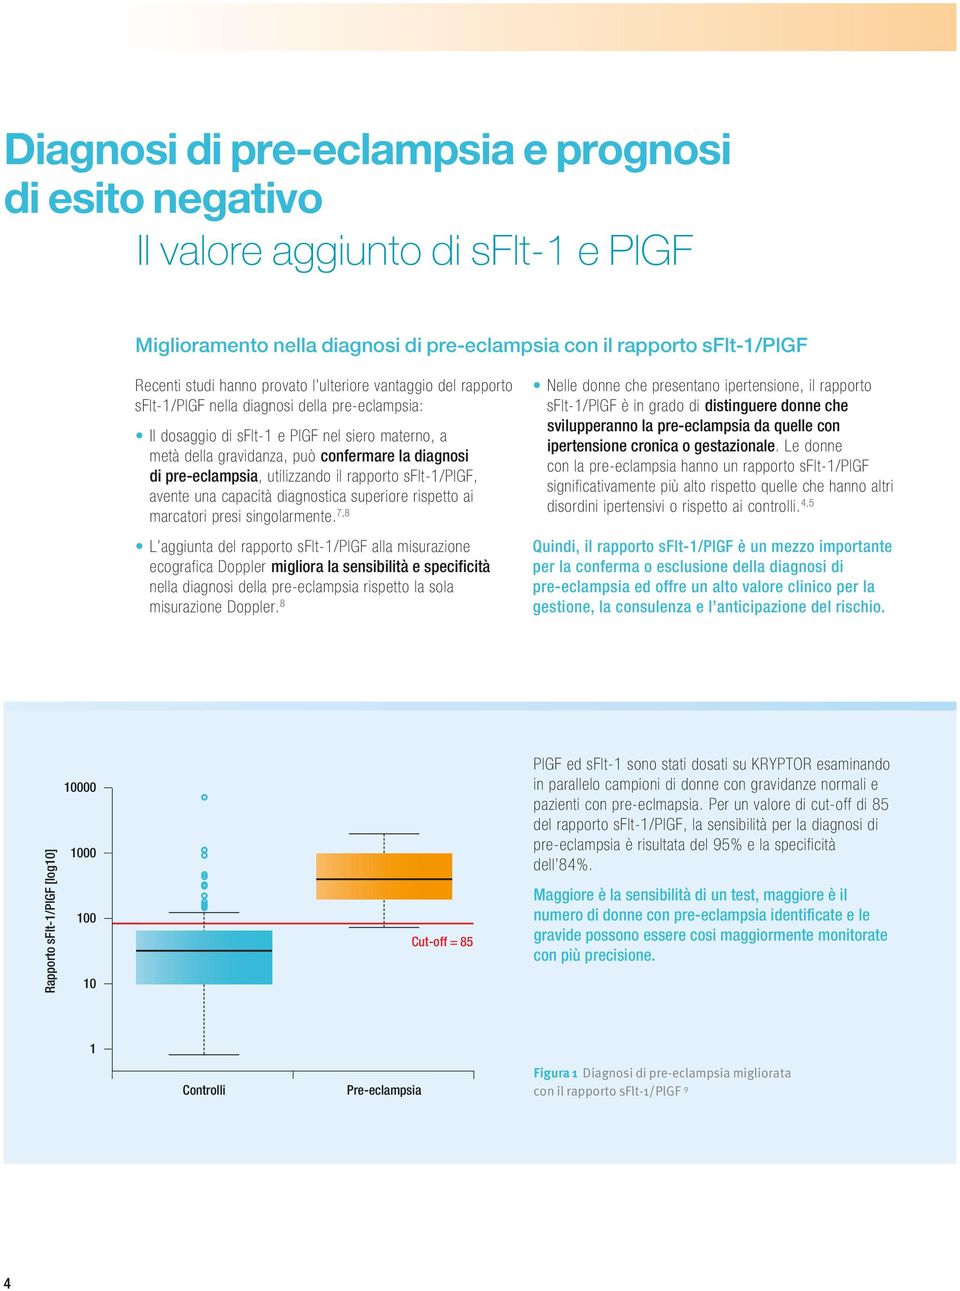 utilizzando il rapporto sflt-1/plgf, avente una capacità diagnostica superiore rispetto ai marcatori presi singolarmente.